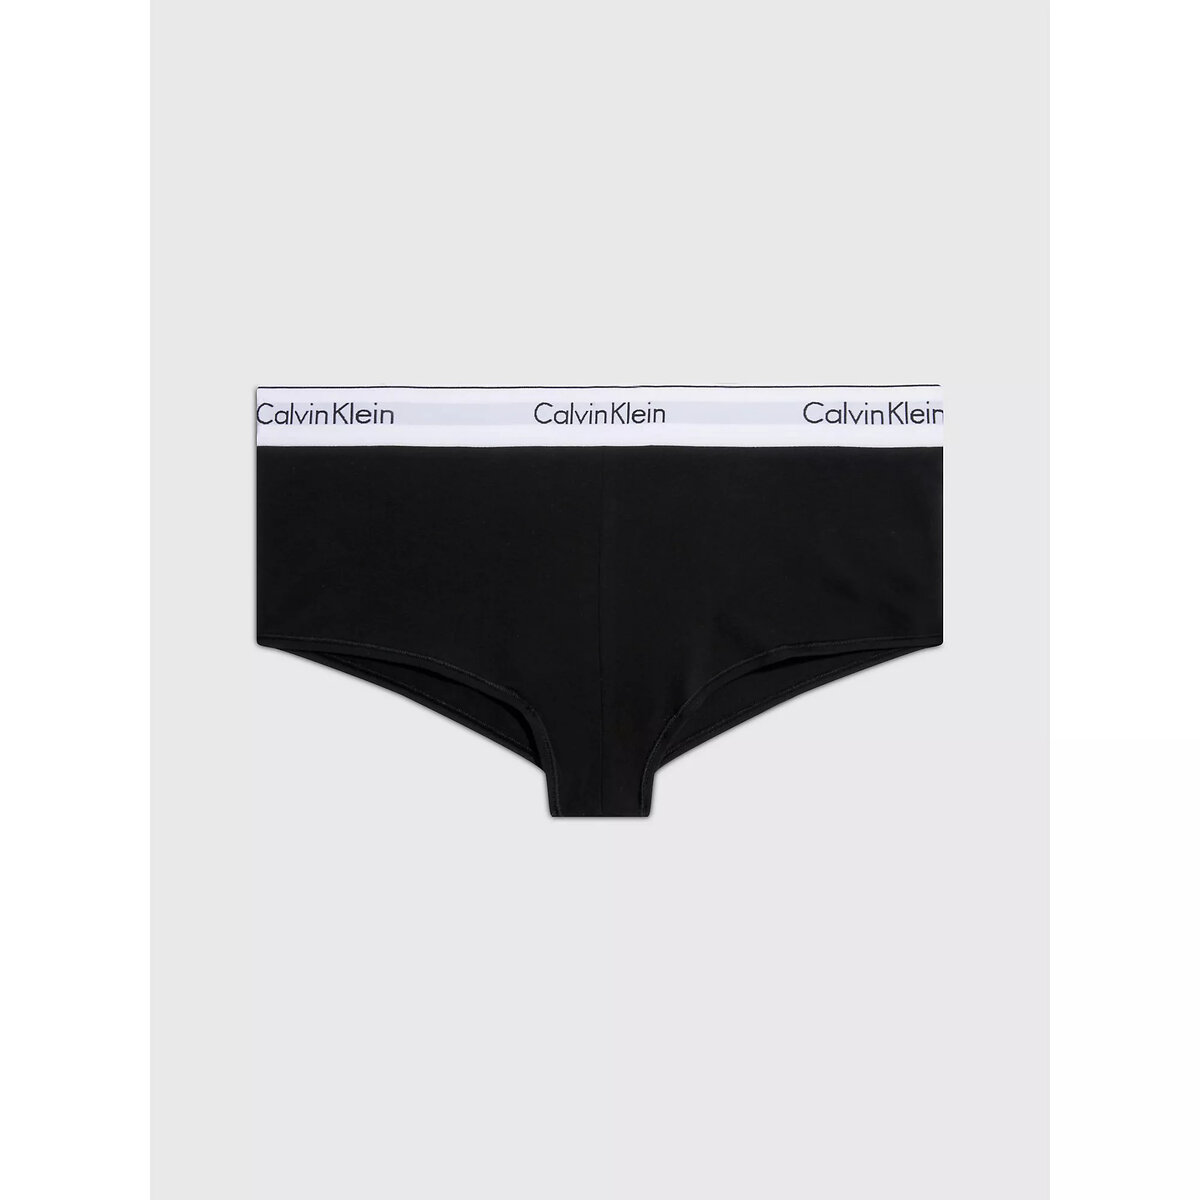 Ženské pohodlné kalhotky - Calvin Klein i652_0000F3788E001001